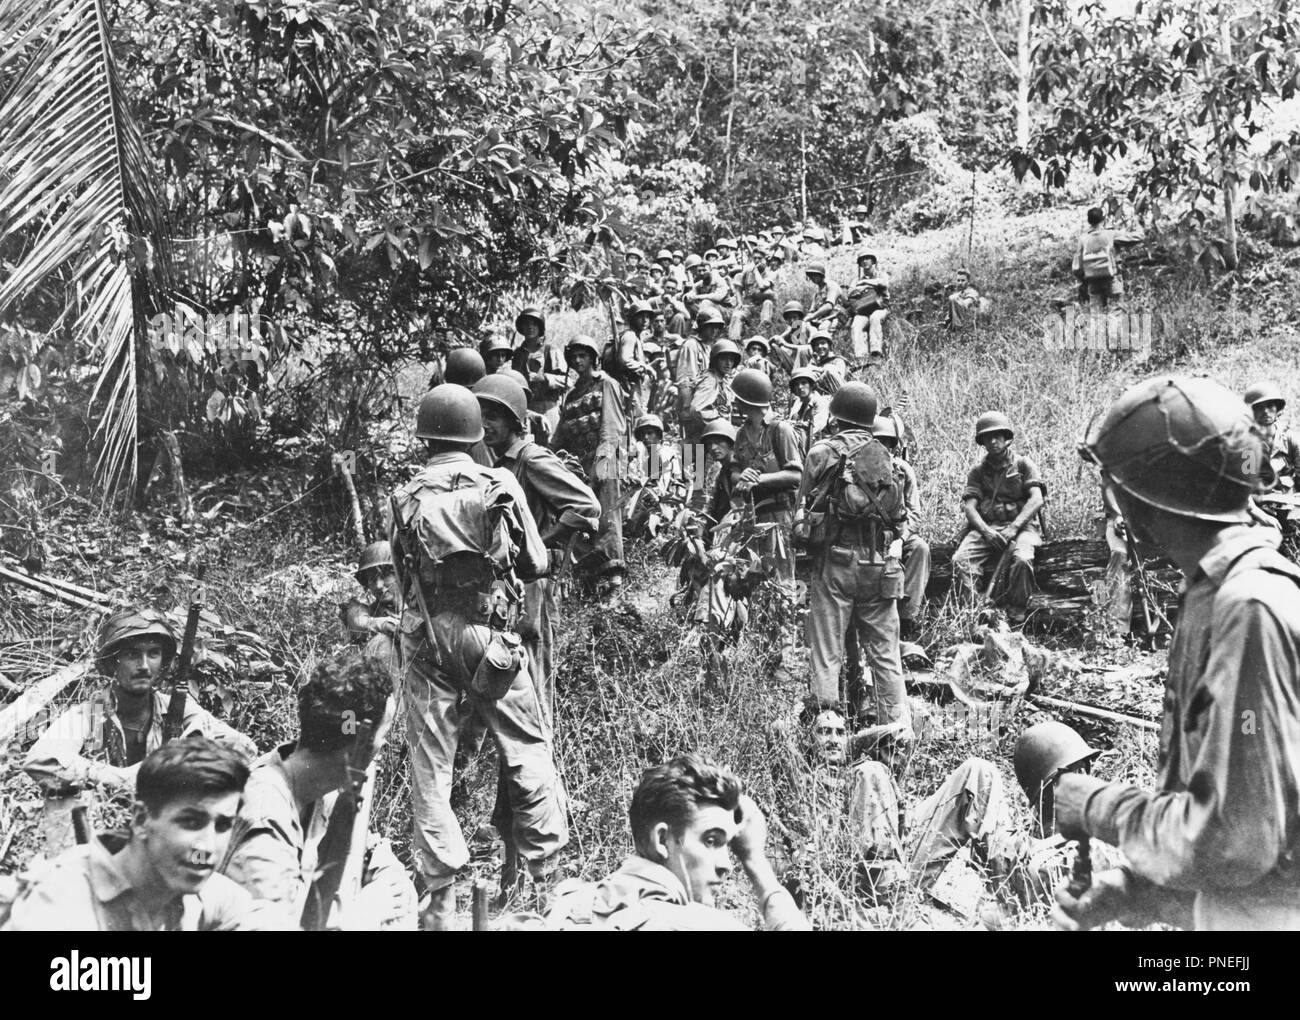 La campagne de Guadalcanal, Août 1942 Février 1943 US Marines reste dans le domaine sur Guadalcanal, vers août-décembre 1942. La plupart de ces marines sont armés de M1903 vis-action rifles et transporter M1905 de baïonnettes et de l'USMC 1941 pochettes. Deux hommes haut sur la colline à droite porter des gilets et de mortier dans un centre a une guerre mondiale I type veste grenade. Le milieu marin assis à l'extrême droite a un fusil automatique Browning. Banque D'Images